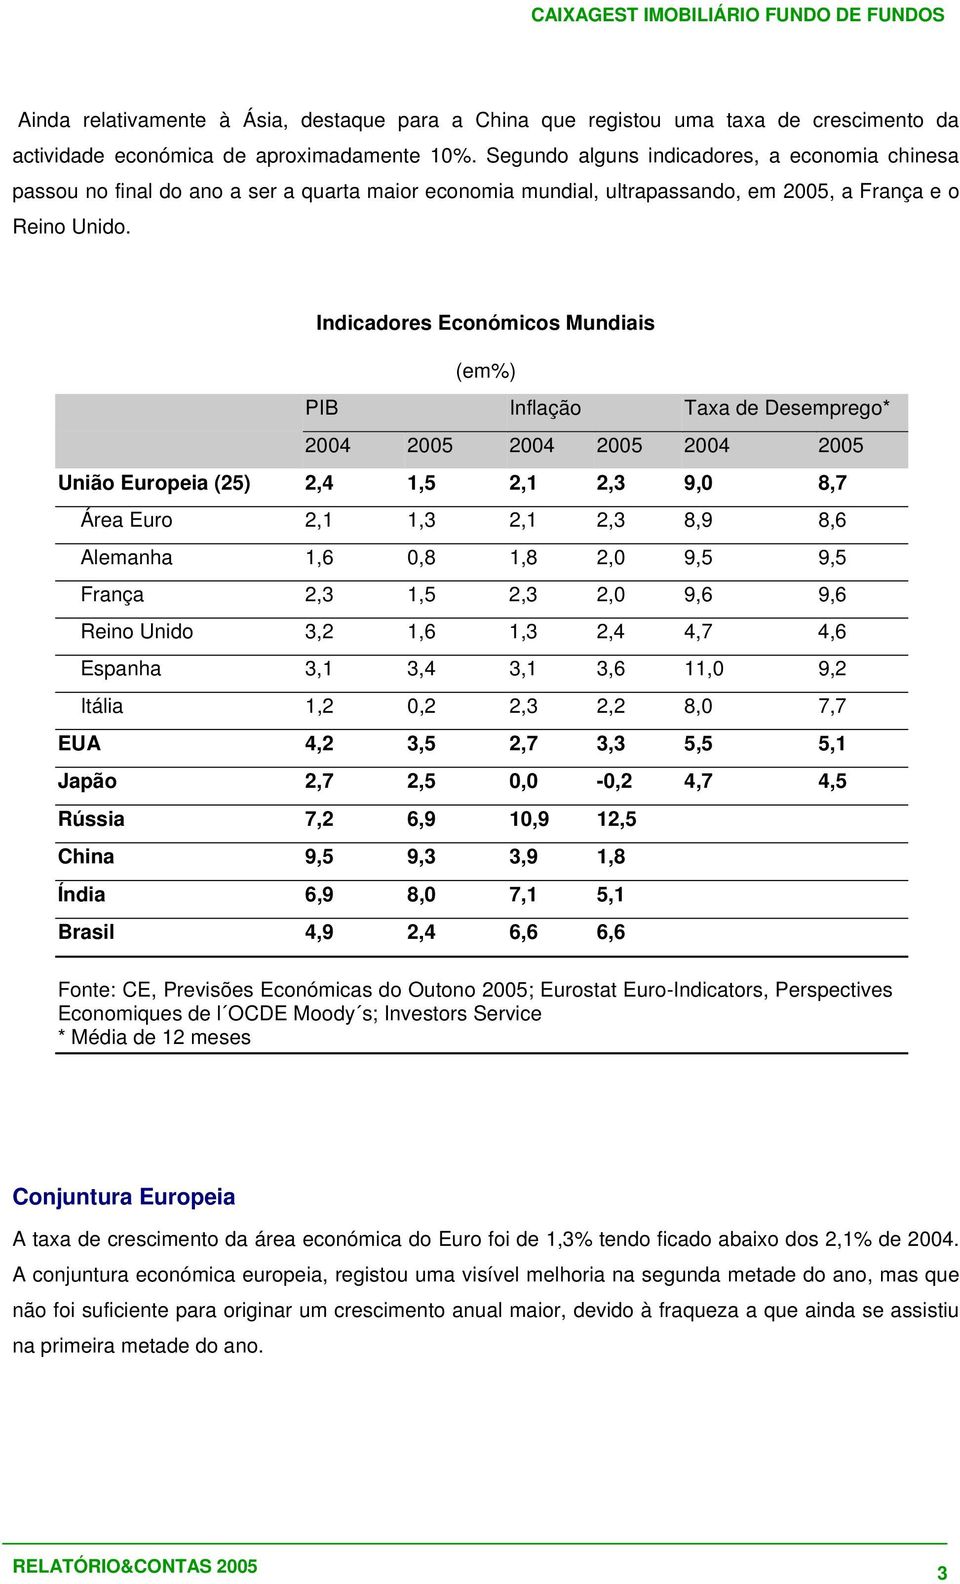 Indicadores Económicos Mundiais (em%) PIB Inflação Taxa de Desemprego* 2004 2005 2004 2005 2004 2005 União Europeia (25) 2,4 1,5 2,1 2,3 9,0 8,7 Área Euro 2,1 1,3 2,1 2,3 8,9 8,6 Alemanha 1,6 0,8 1,8